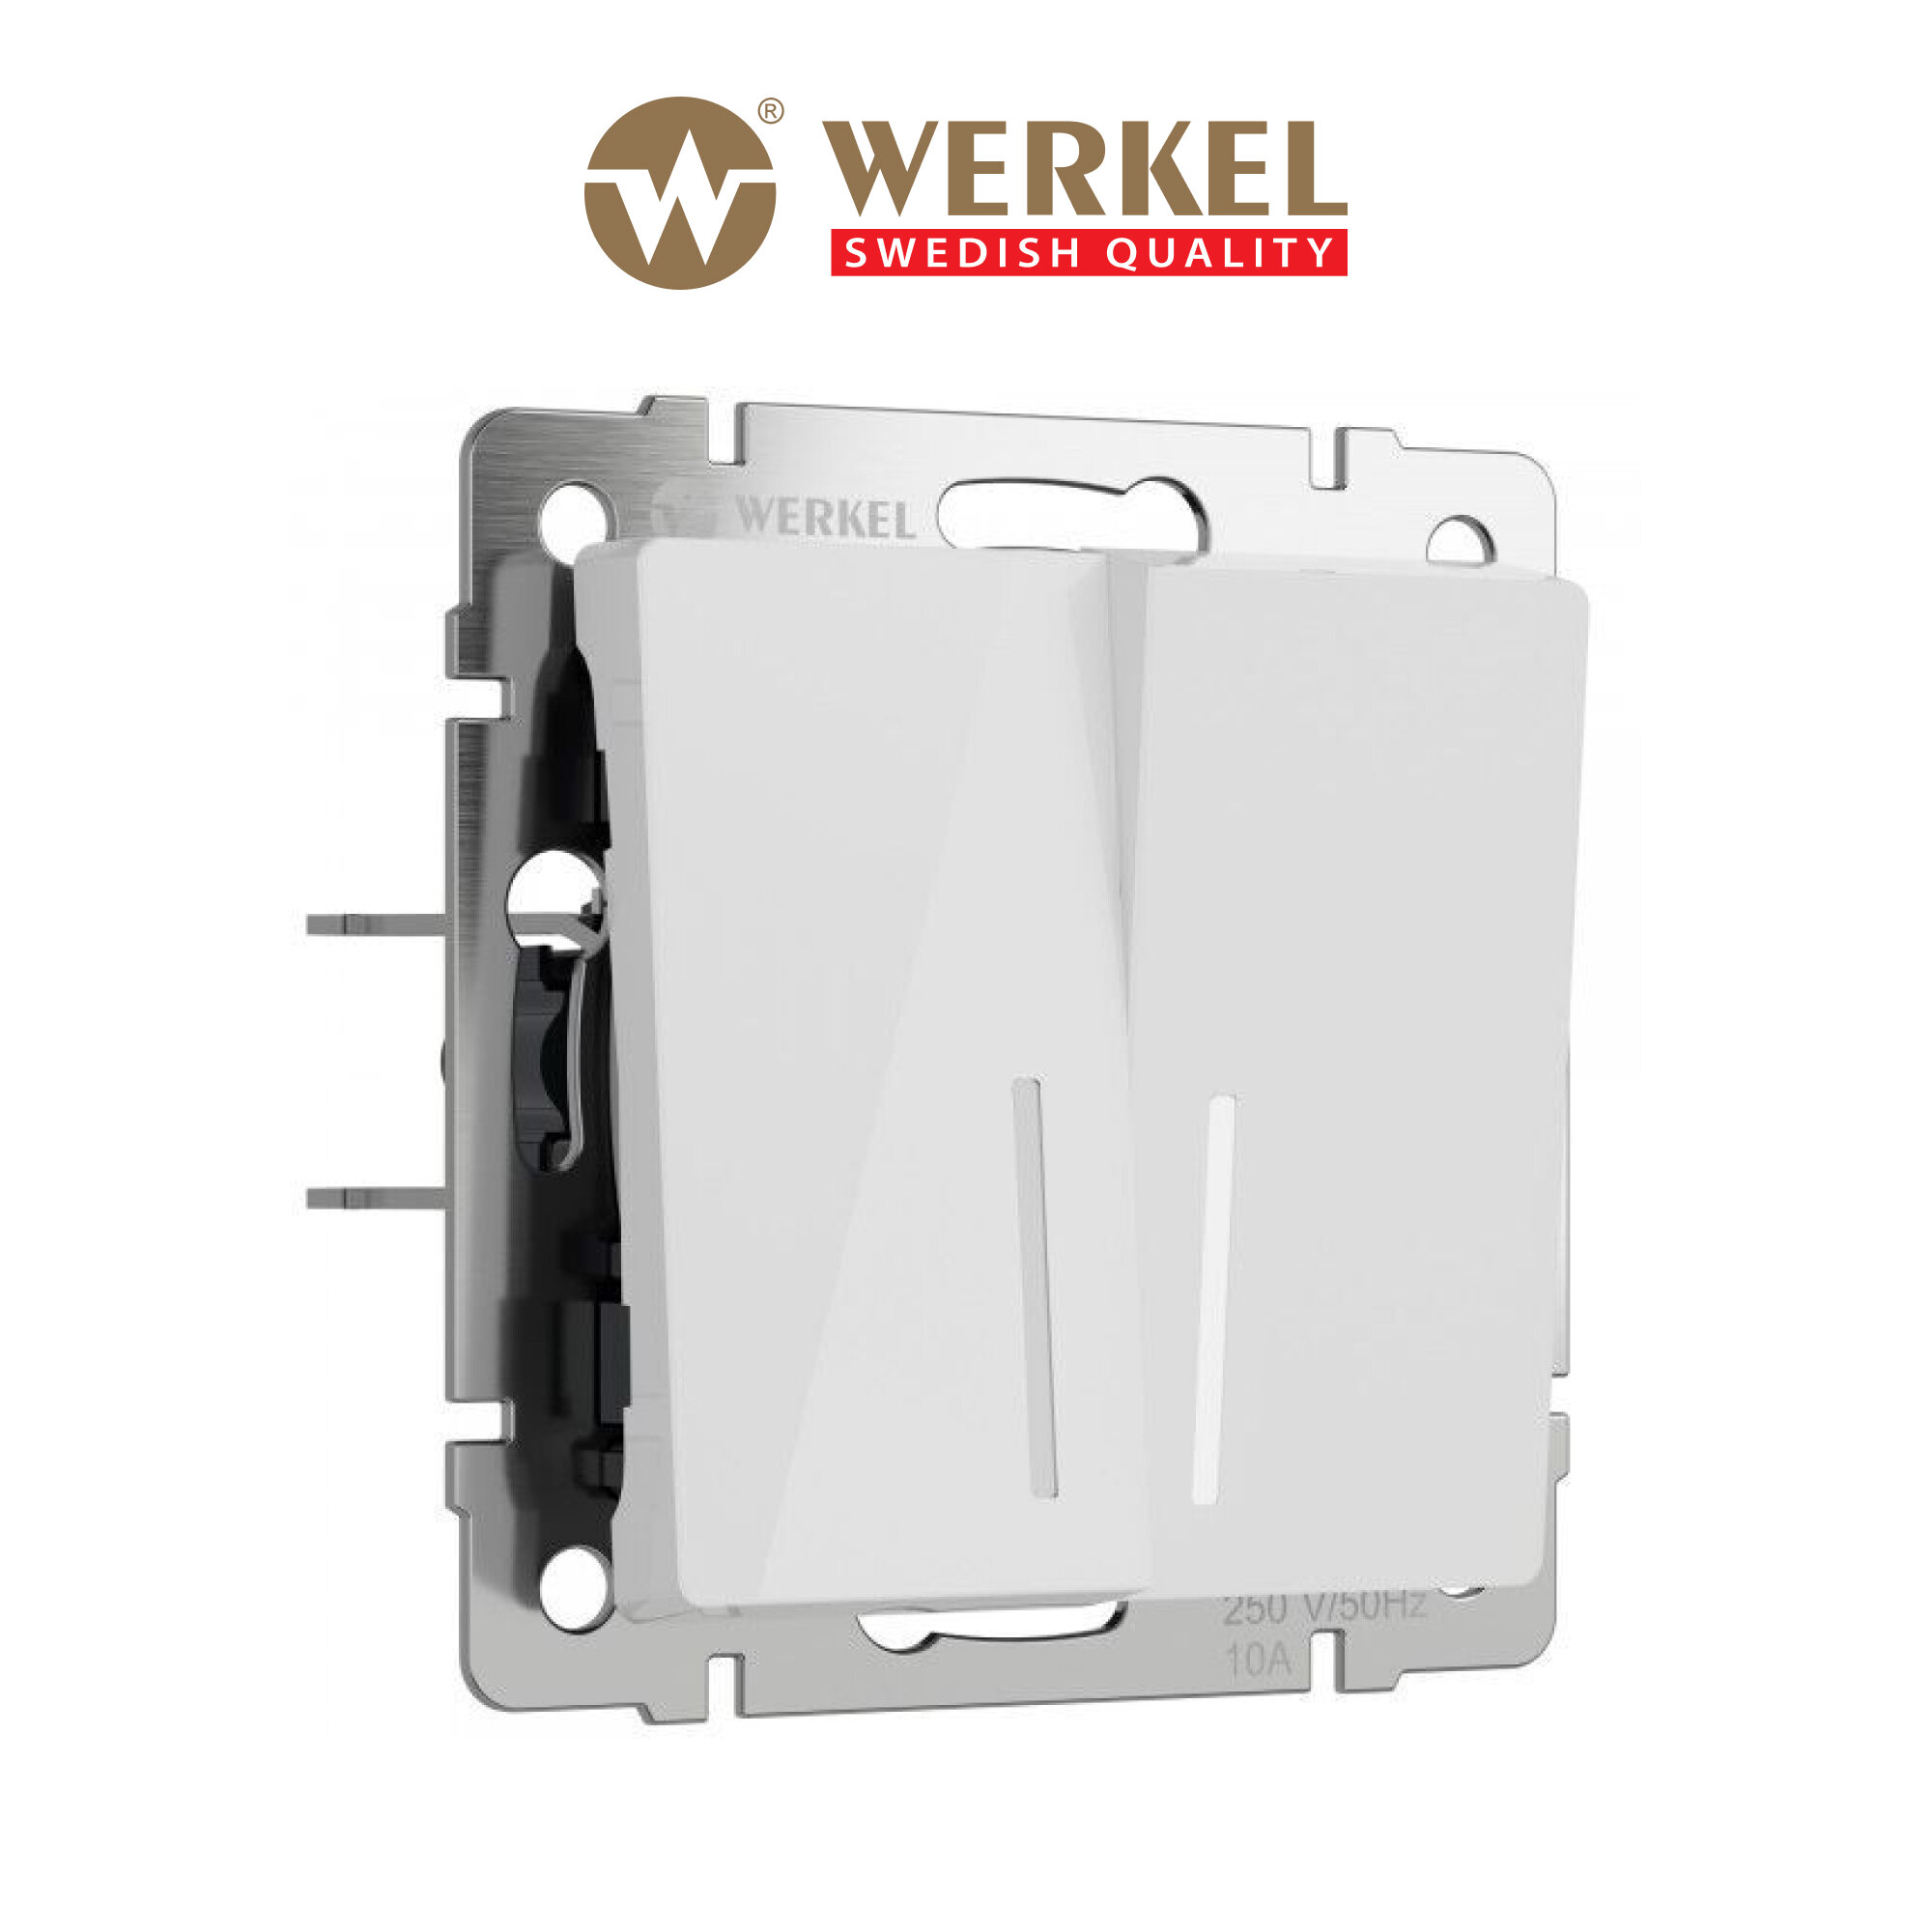 Выключатель двухклавишный с подсветкой Werkel W1120141 белый акрил IP20